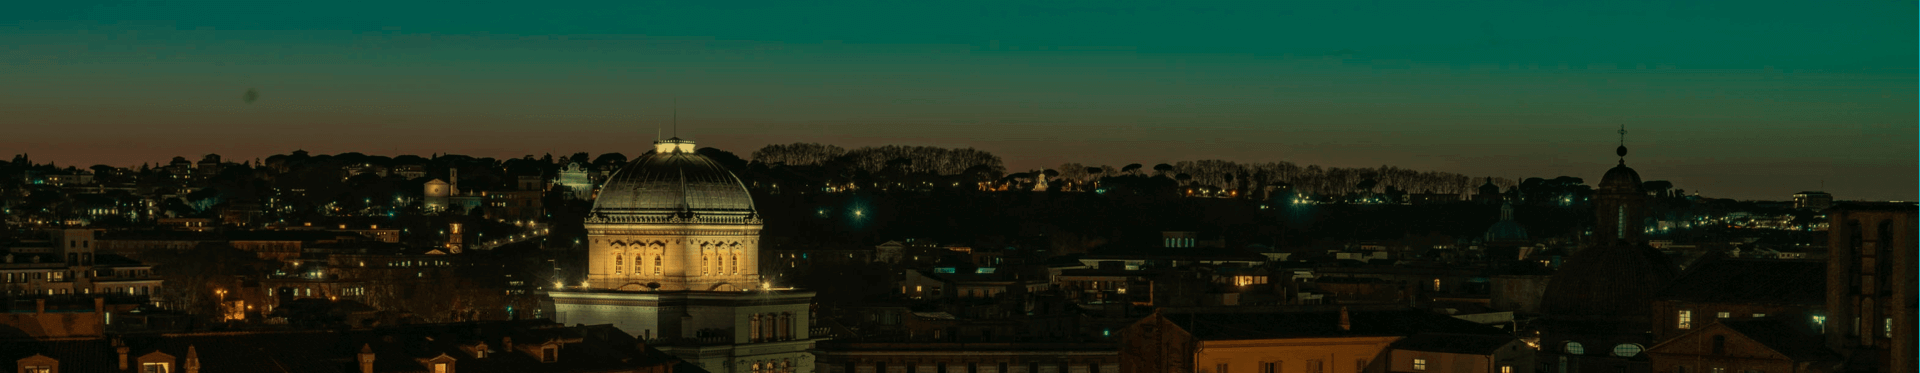 Le luci al LED di Acea per l'illuminazione della Sinagoga di Roma